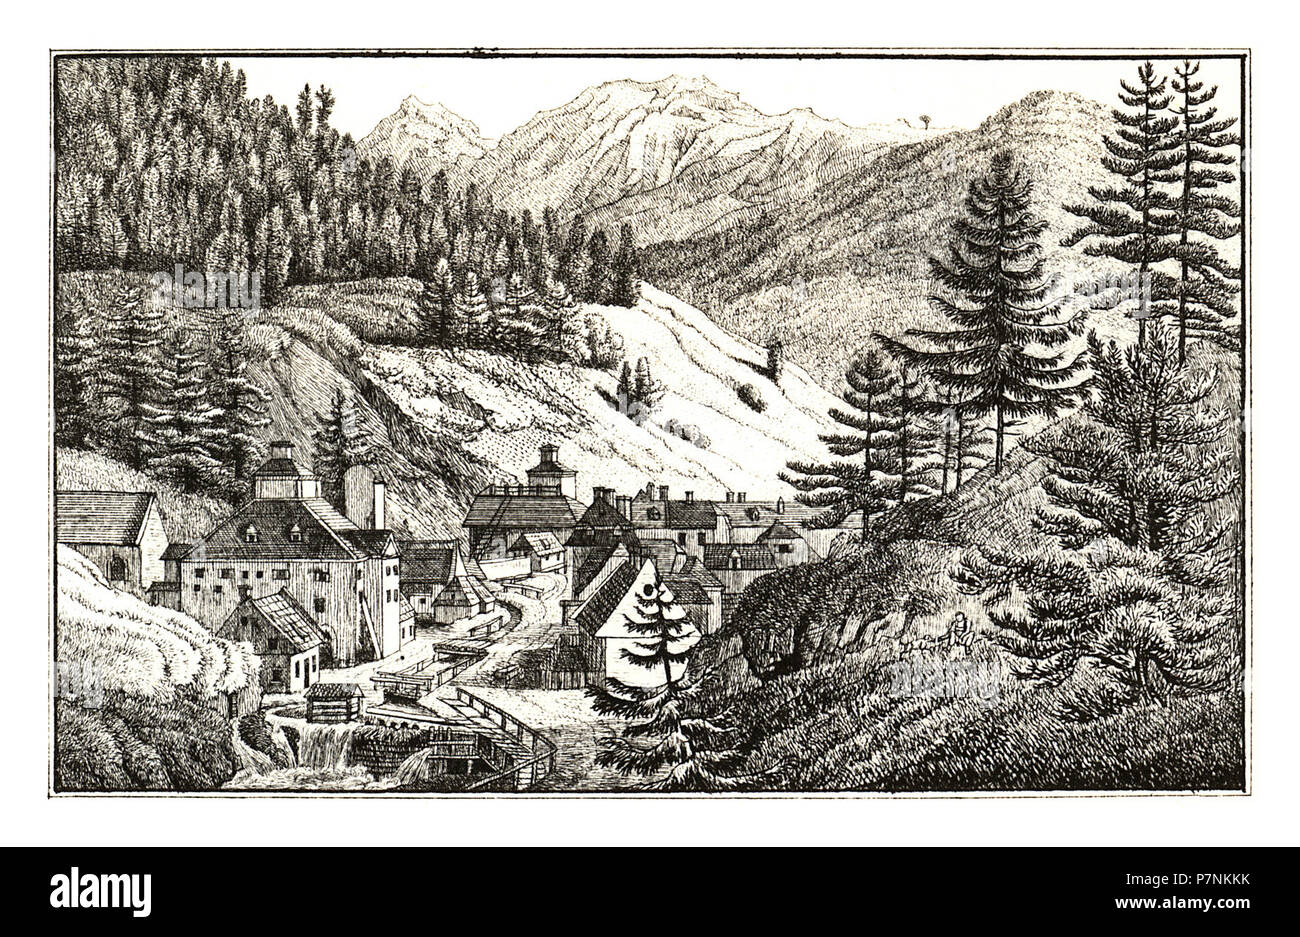 320 Vordernberg mit dem Stadt Leobner Plachhause - J.F.Kaiser Lithografirte Ansichten der Steiermark 1830. Stock Photo